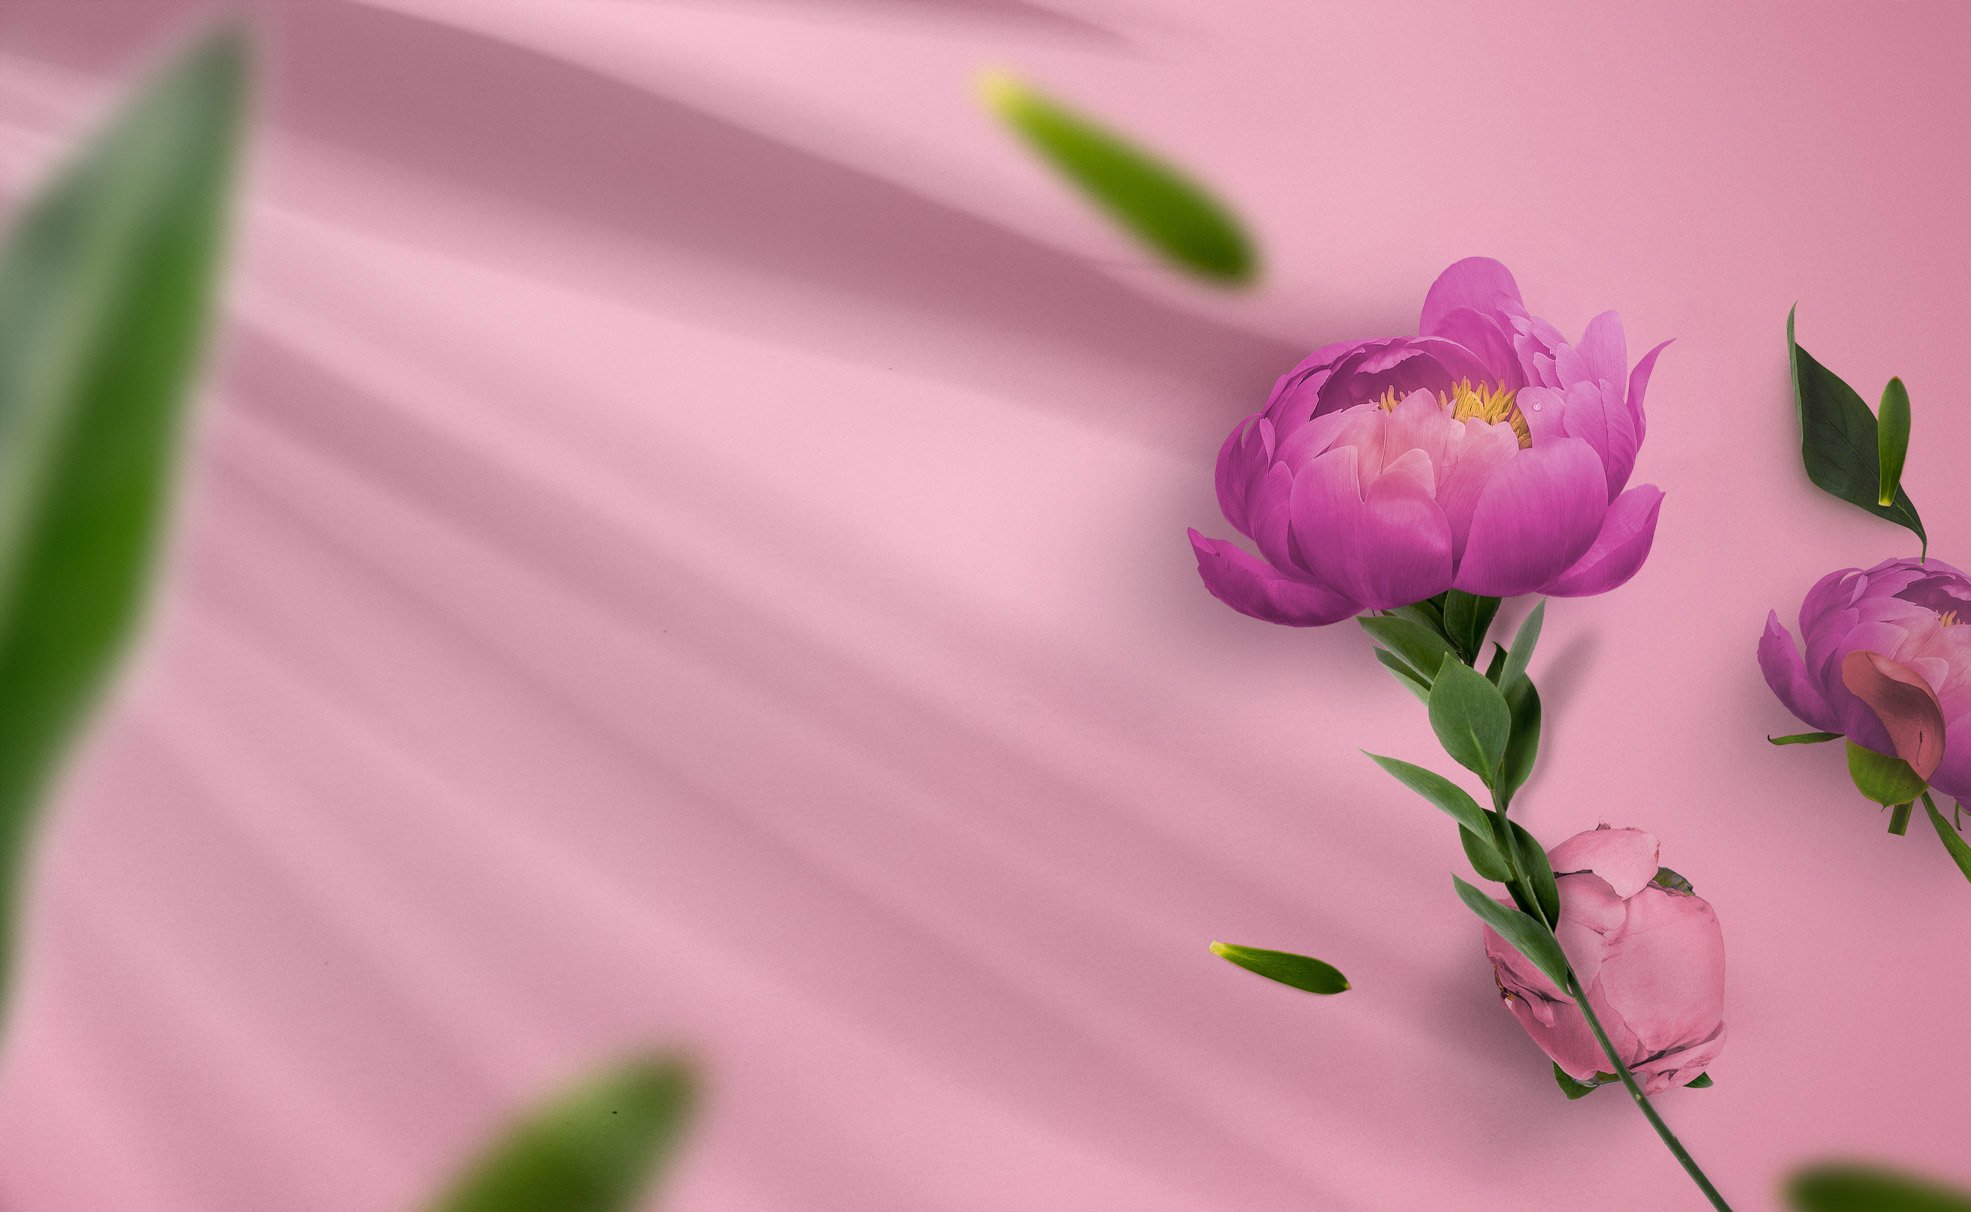 floret boutique - perth florist - perth flowers online delivery